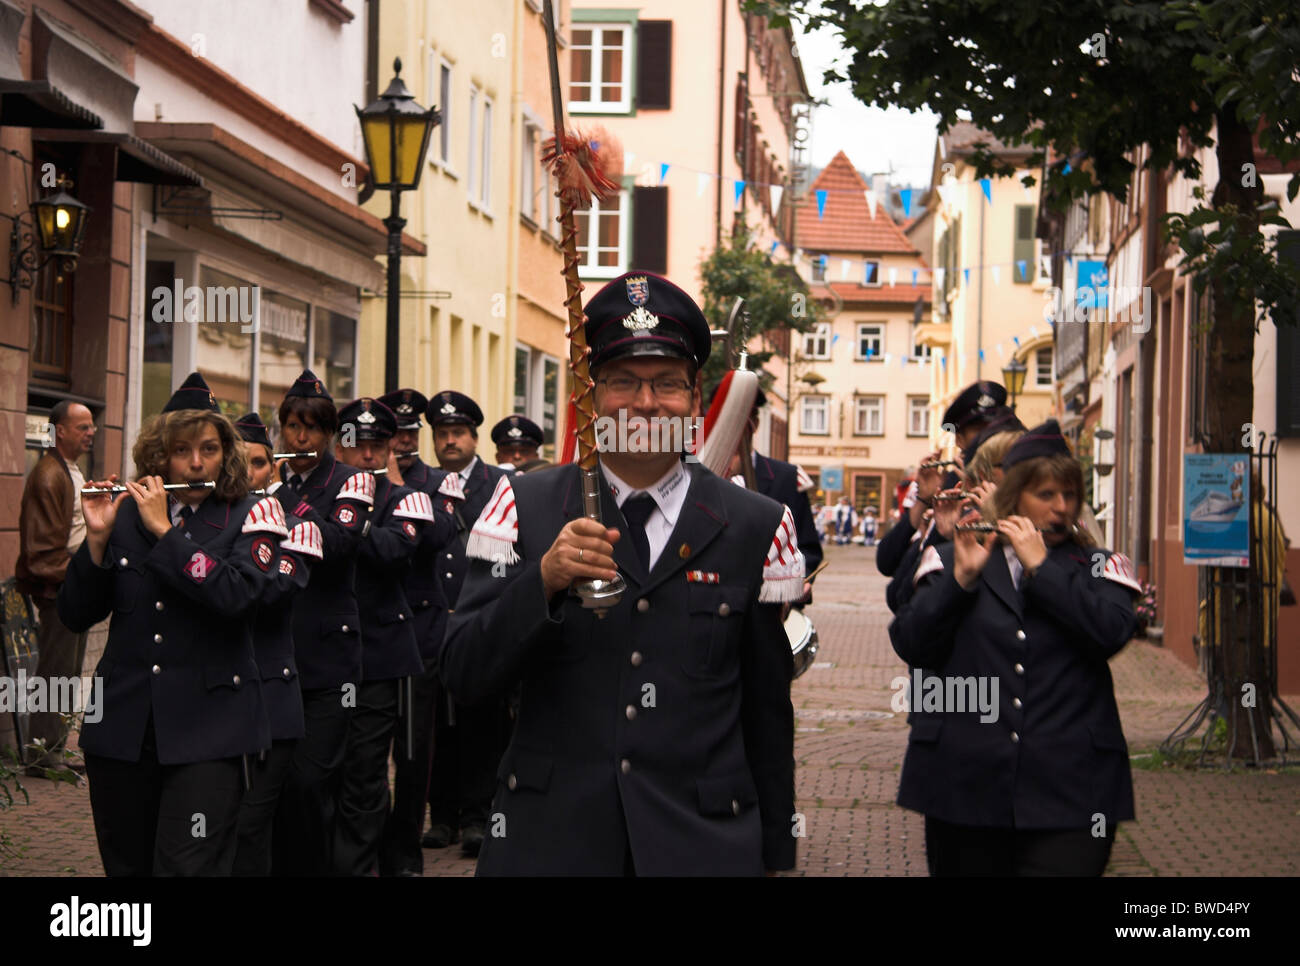 Alfiere, musicisti in uniforme, street parade, celebrazioni giubilari, Eberbach offrono, Germania Foto Stock